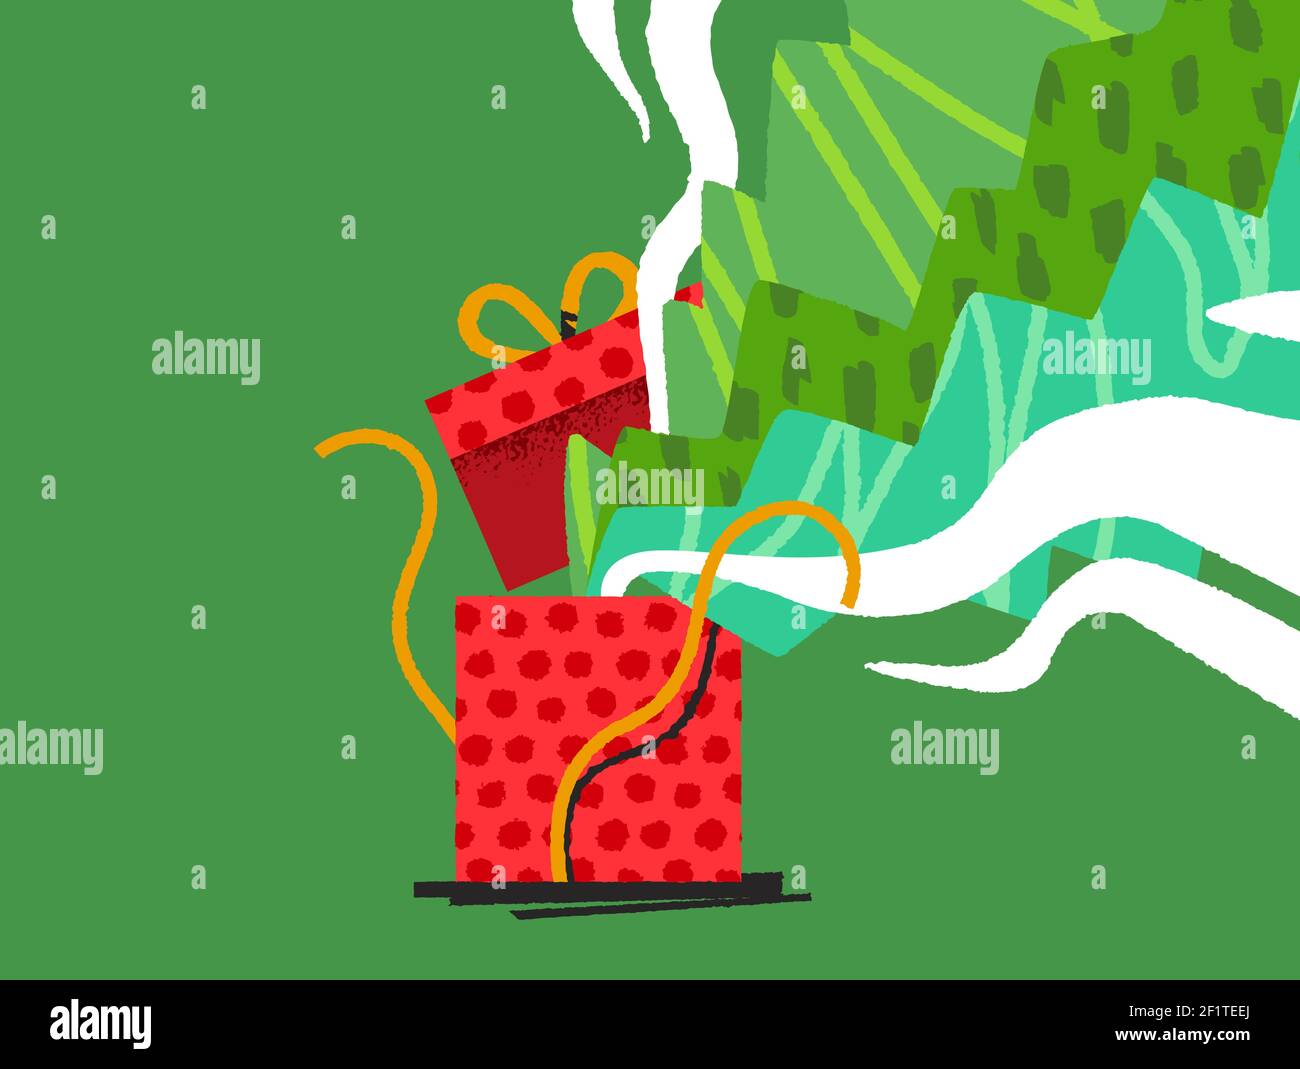 Frohe Weihnachten Geschenkbox Illustration in modernen flachen Hand gezeichnet Cartoon-Stil. Open Weihnachten Urlaub Geschenk mit bunten abstrakten Kunst Feier explis Stock Vektor